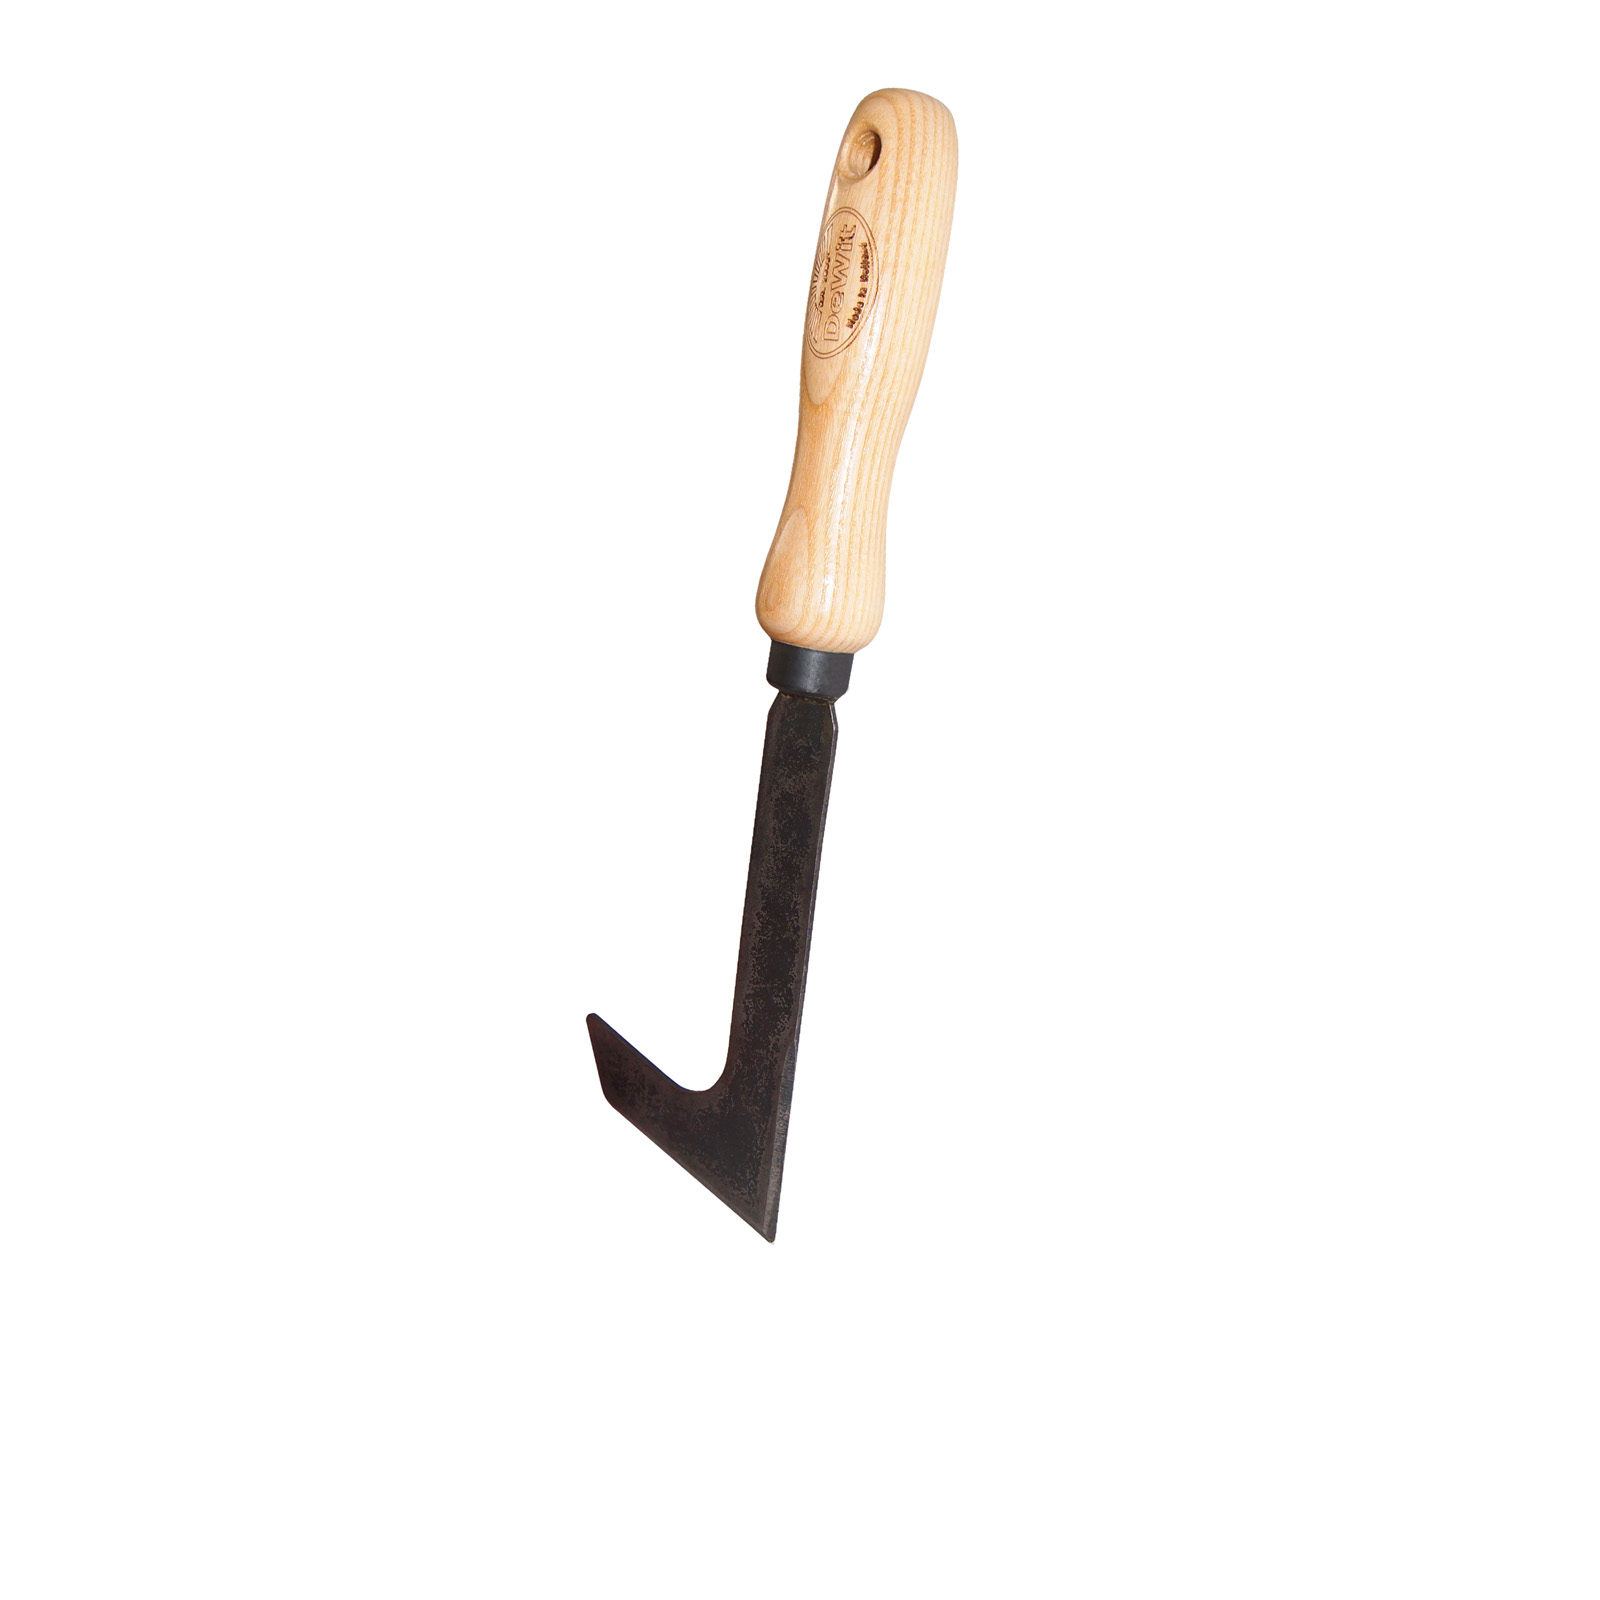 Renskniv / Ogräskniv, trähandtag